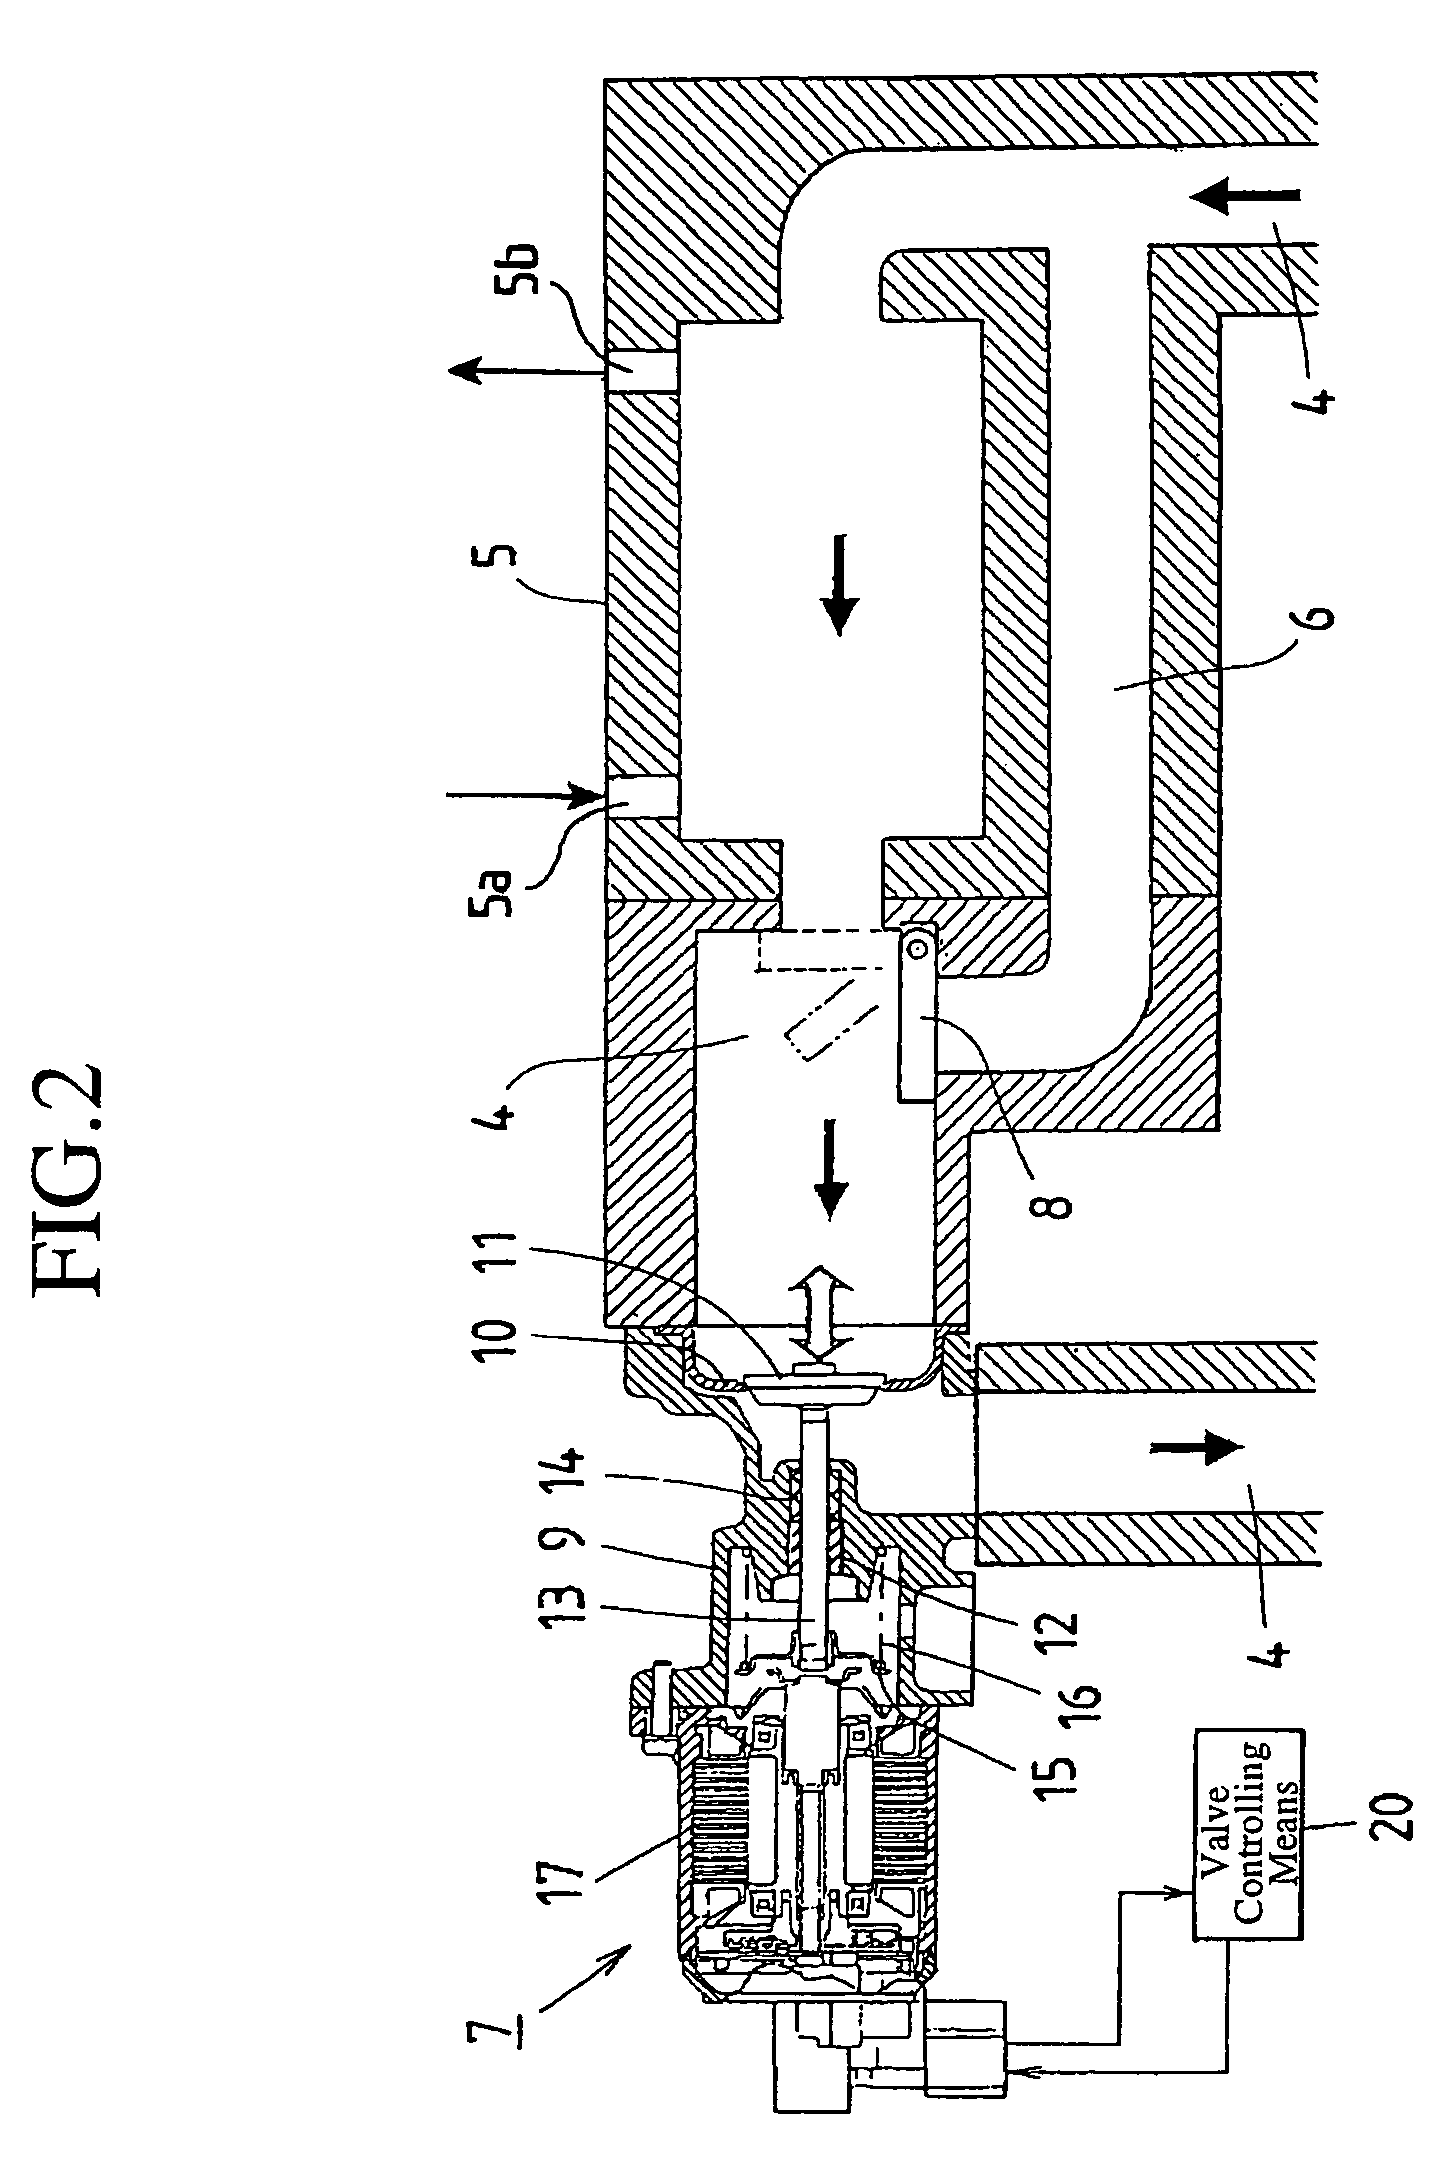 Exhaust gas recirculation apparatus